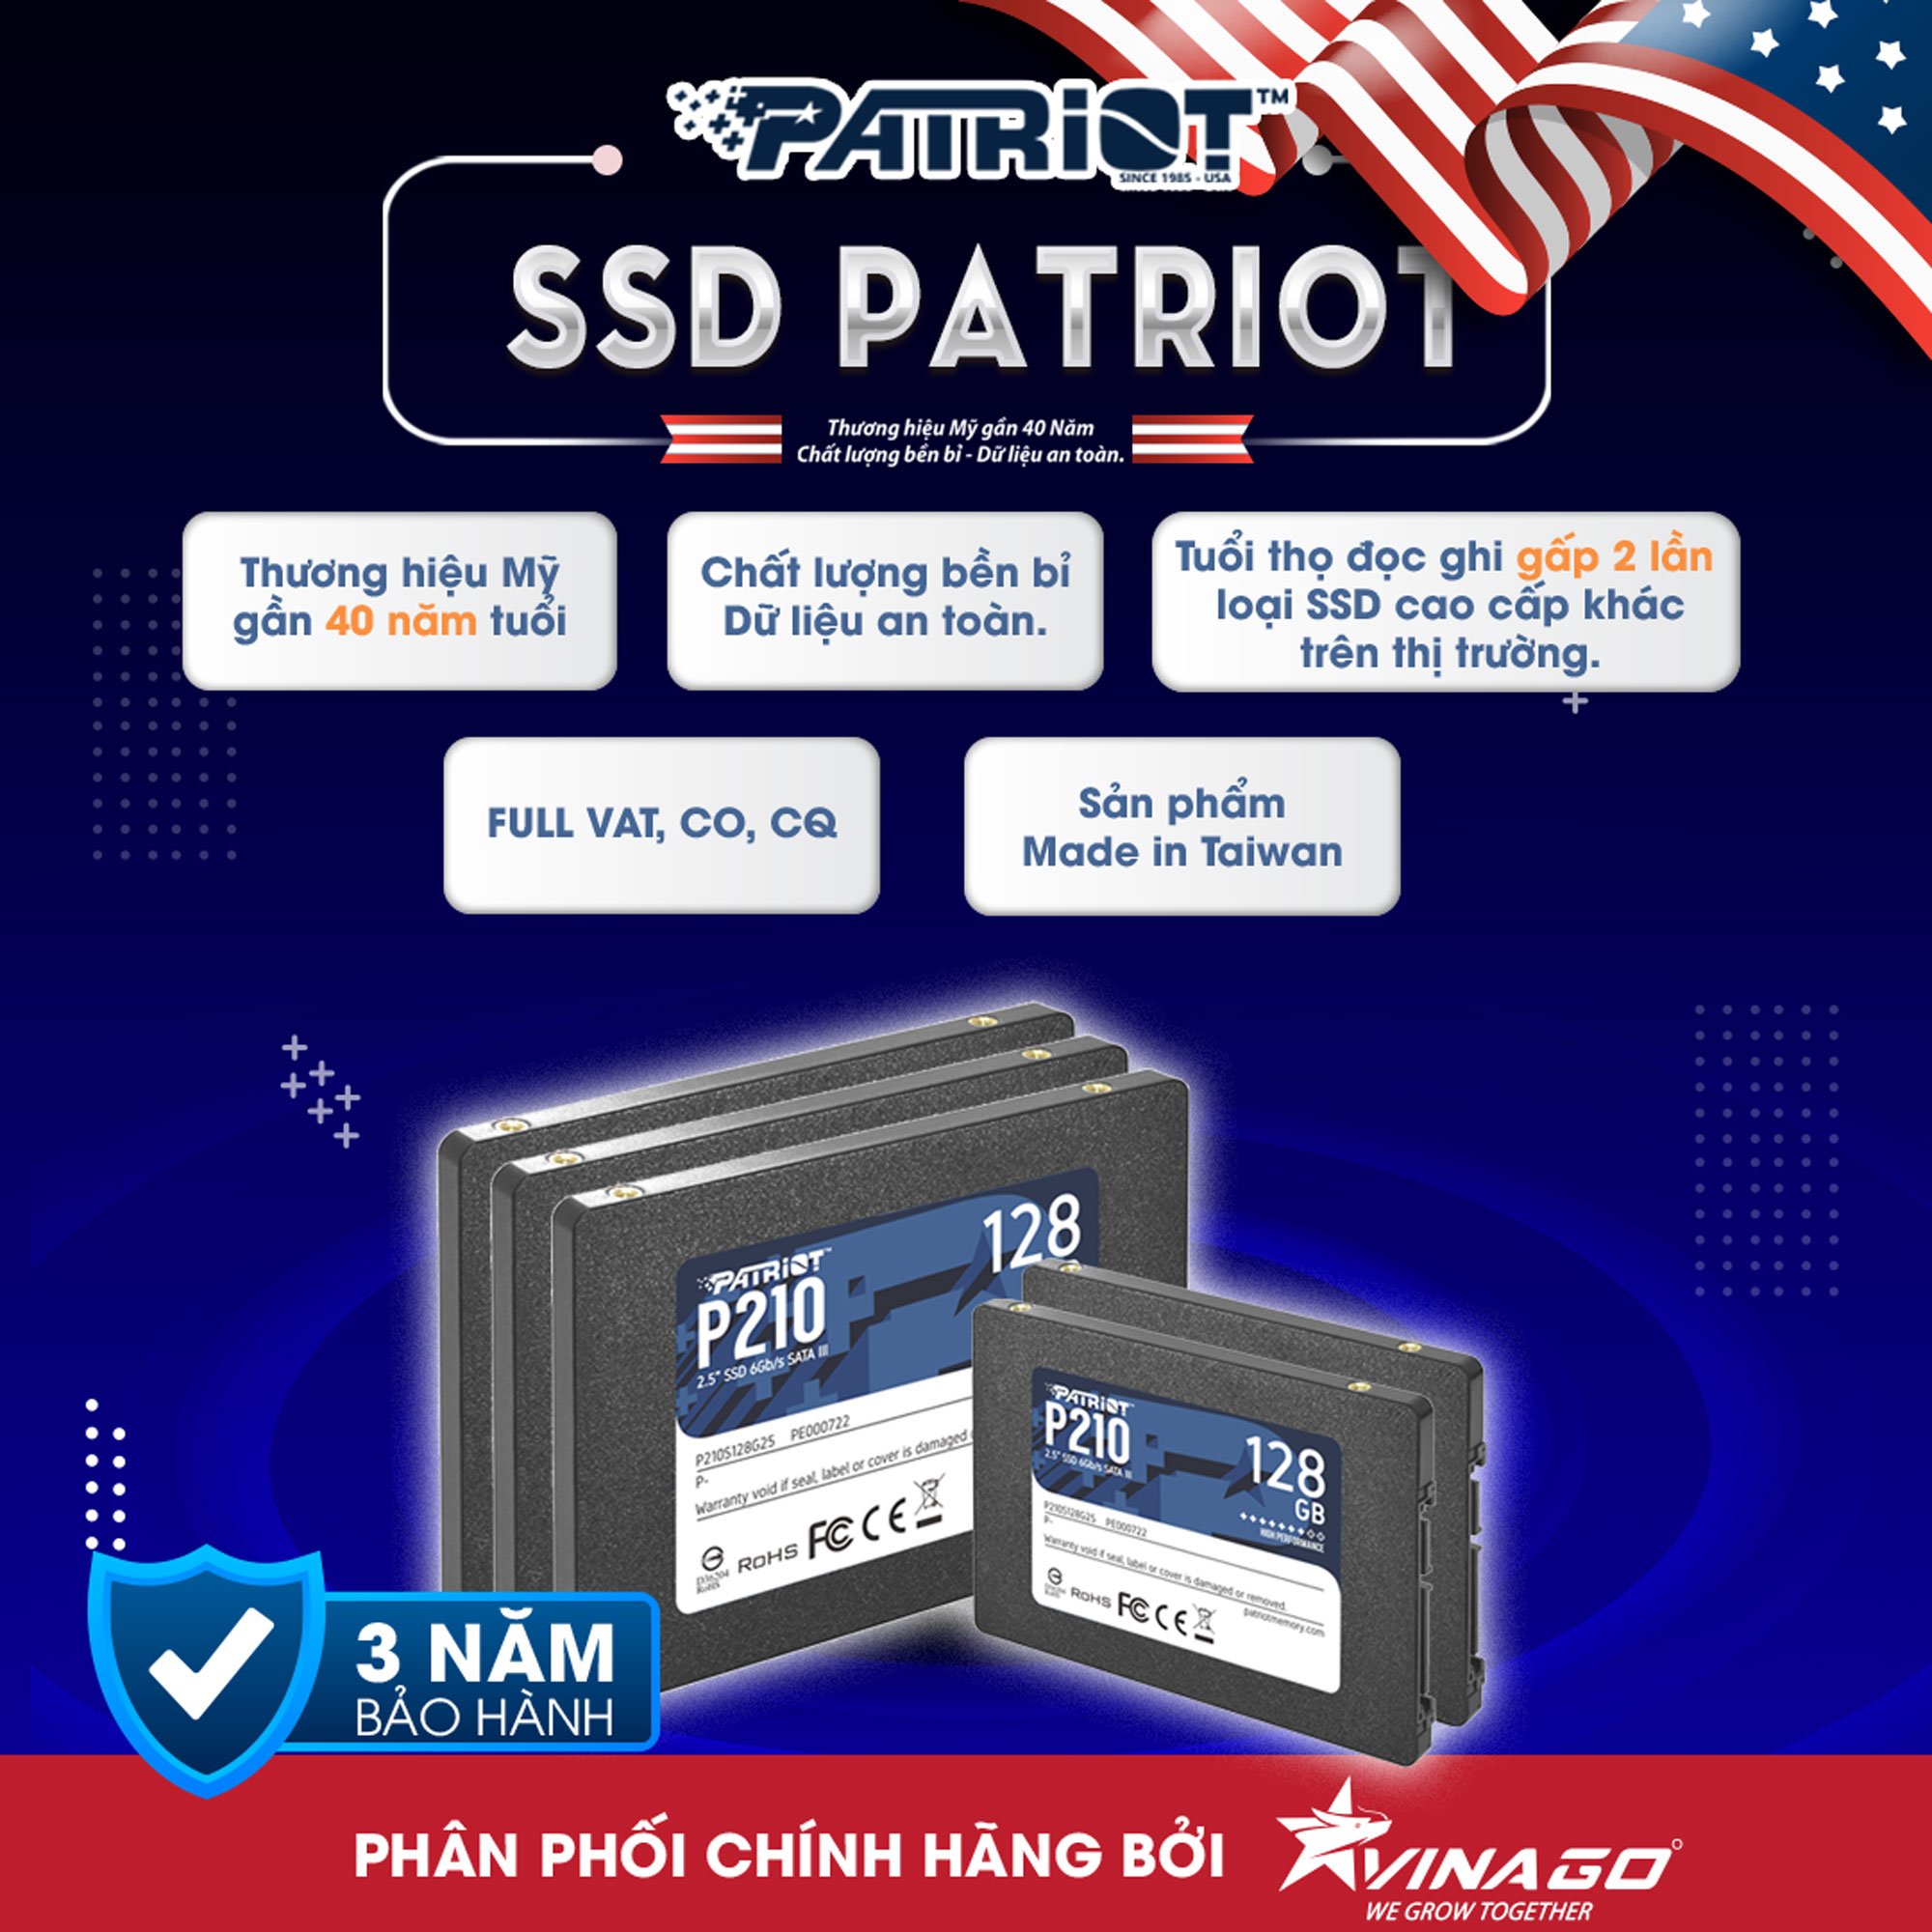 Thẻ nhớ SSD Patriot P210 128GB 2.5 inch SATA iii P210S128G25 hàng chính hãng